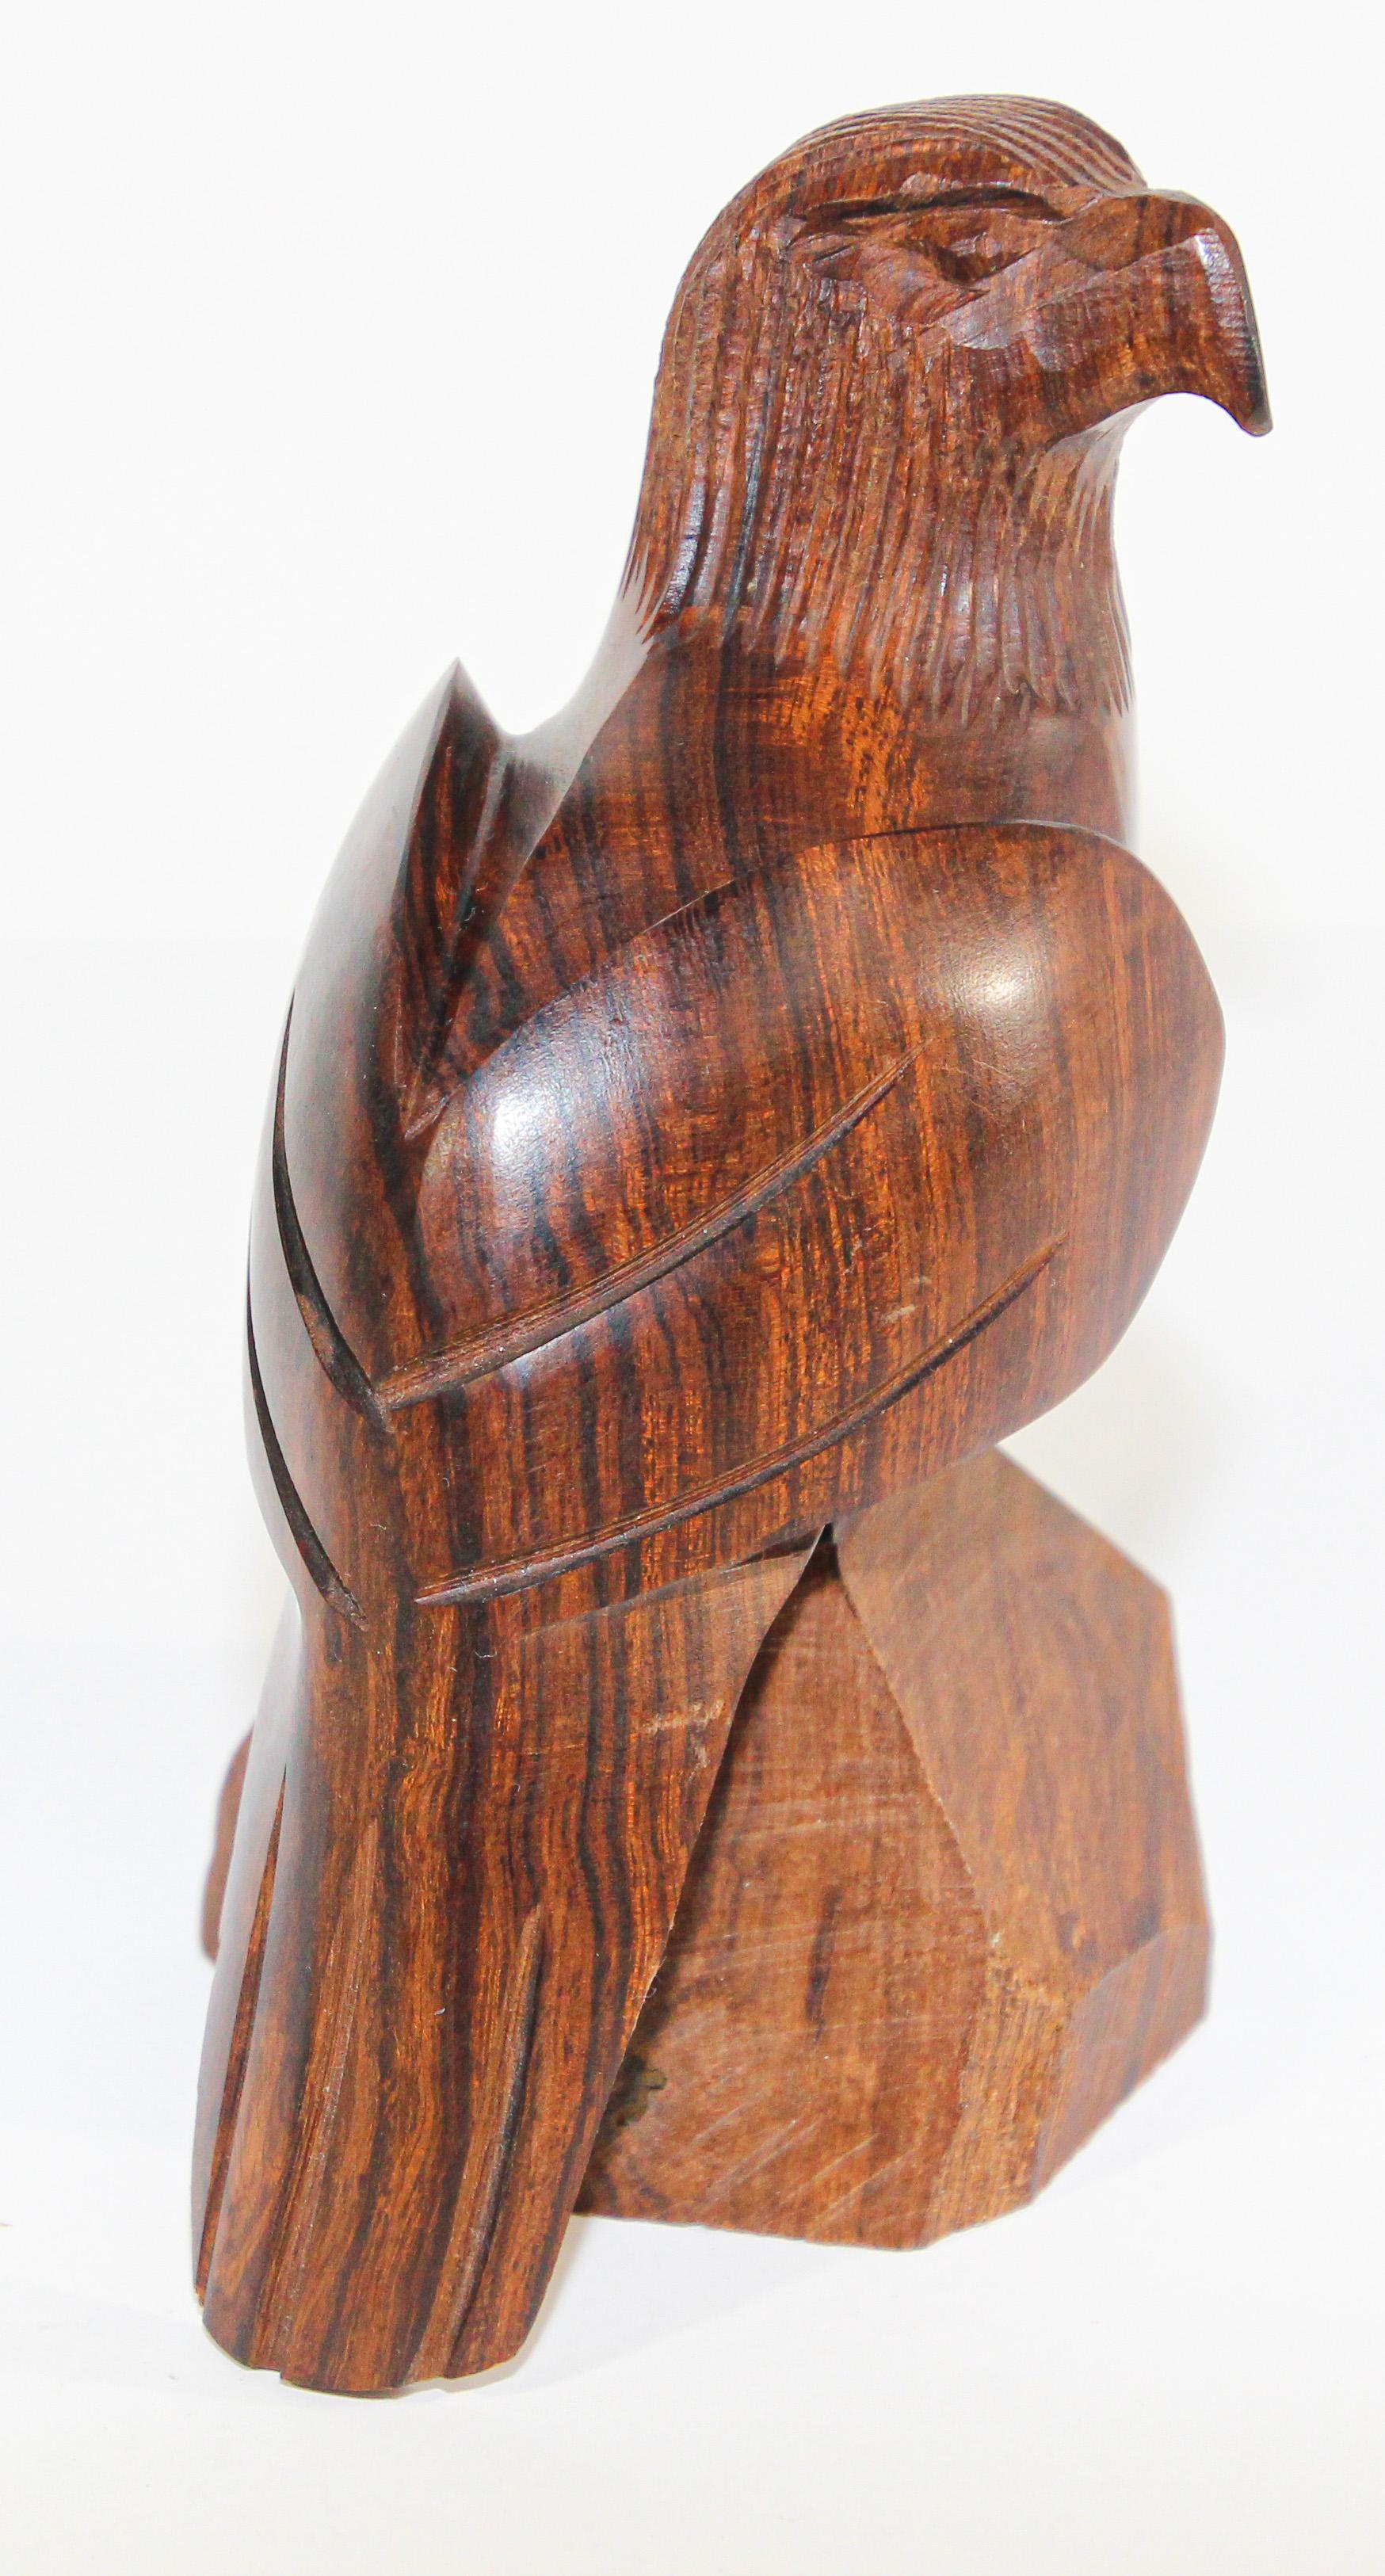 Vintage Skulptur eines amerikanischen Adlers geschnitzt in Seri Ironwood.
Vintage handgeschnitzt Ironwood Southwestern seri Skulptur eines Adlers.
Abmessungen: 5,5